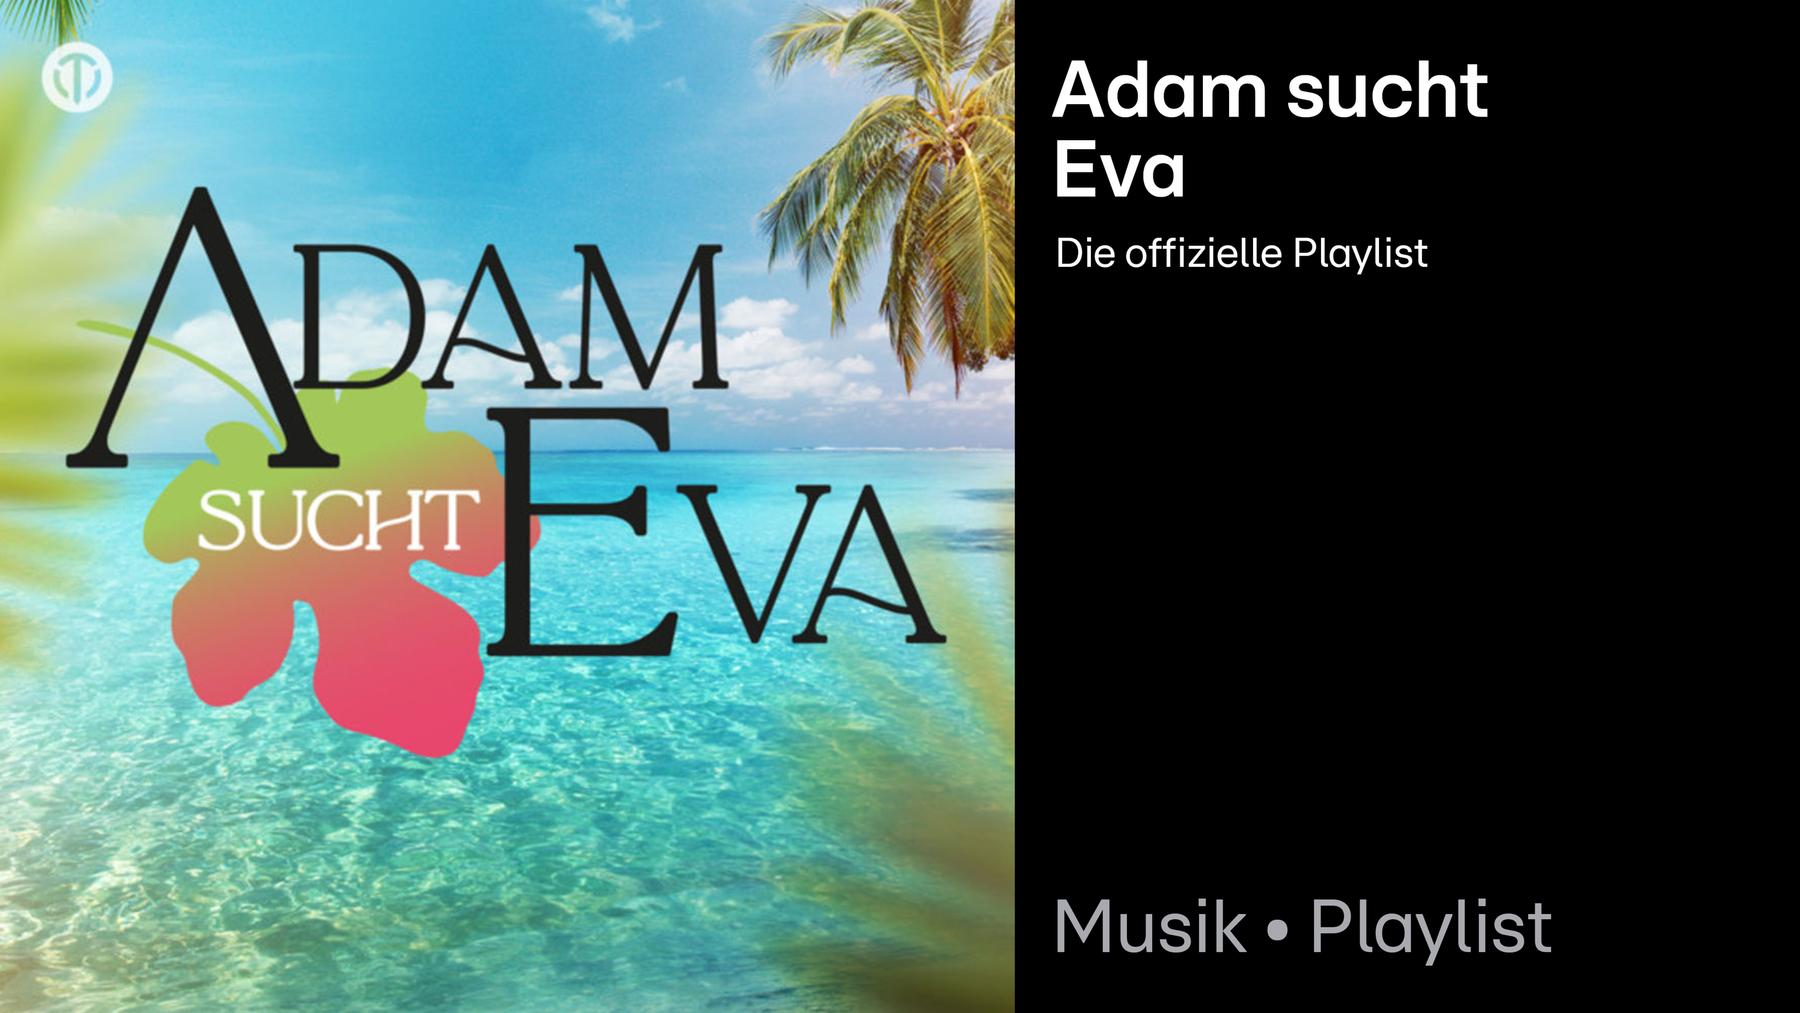 Adam sucht Eva Playlist